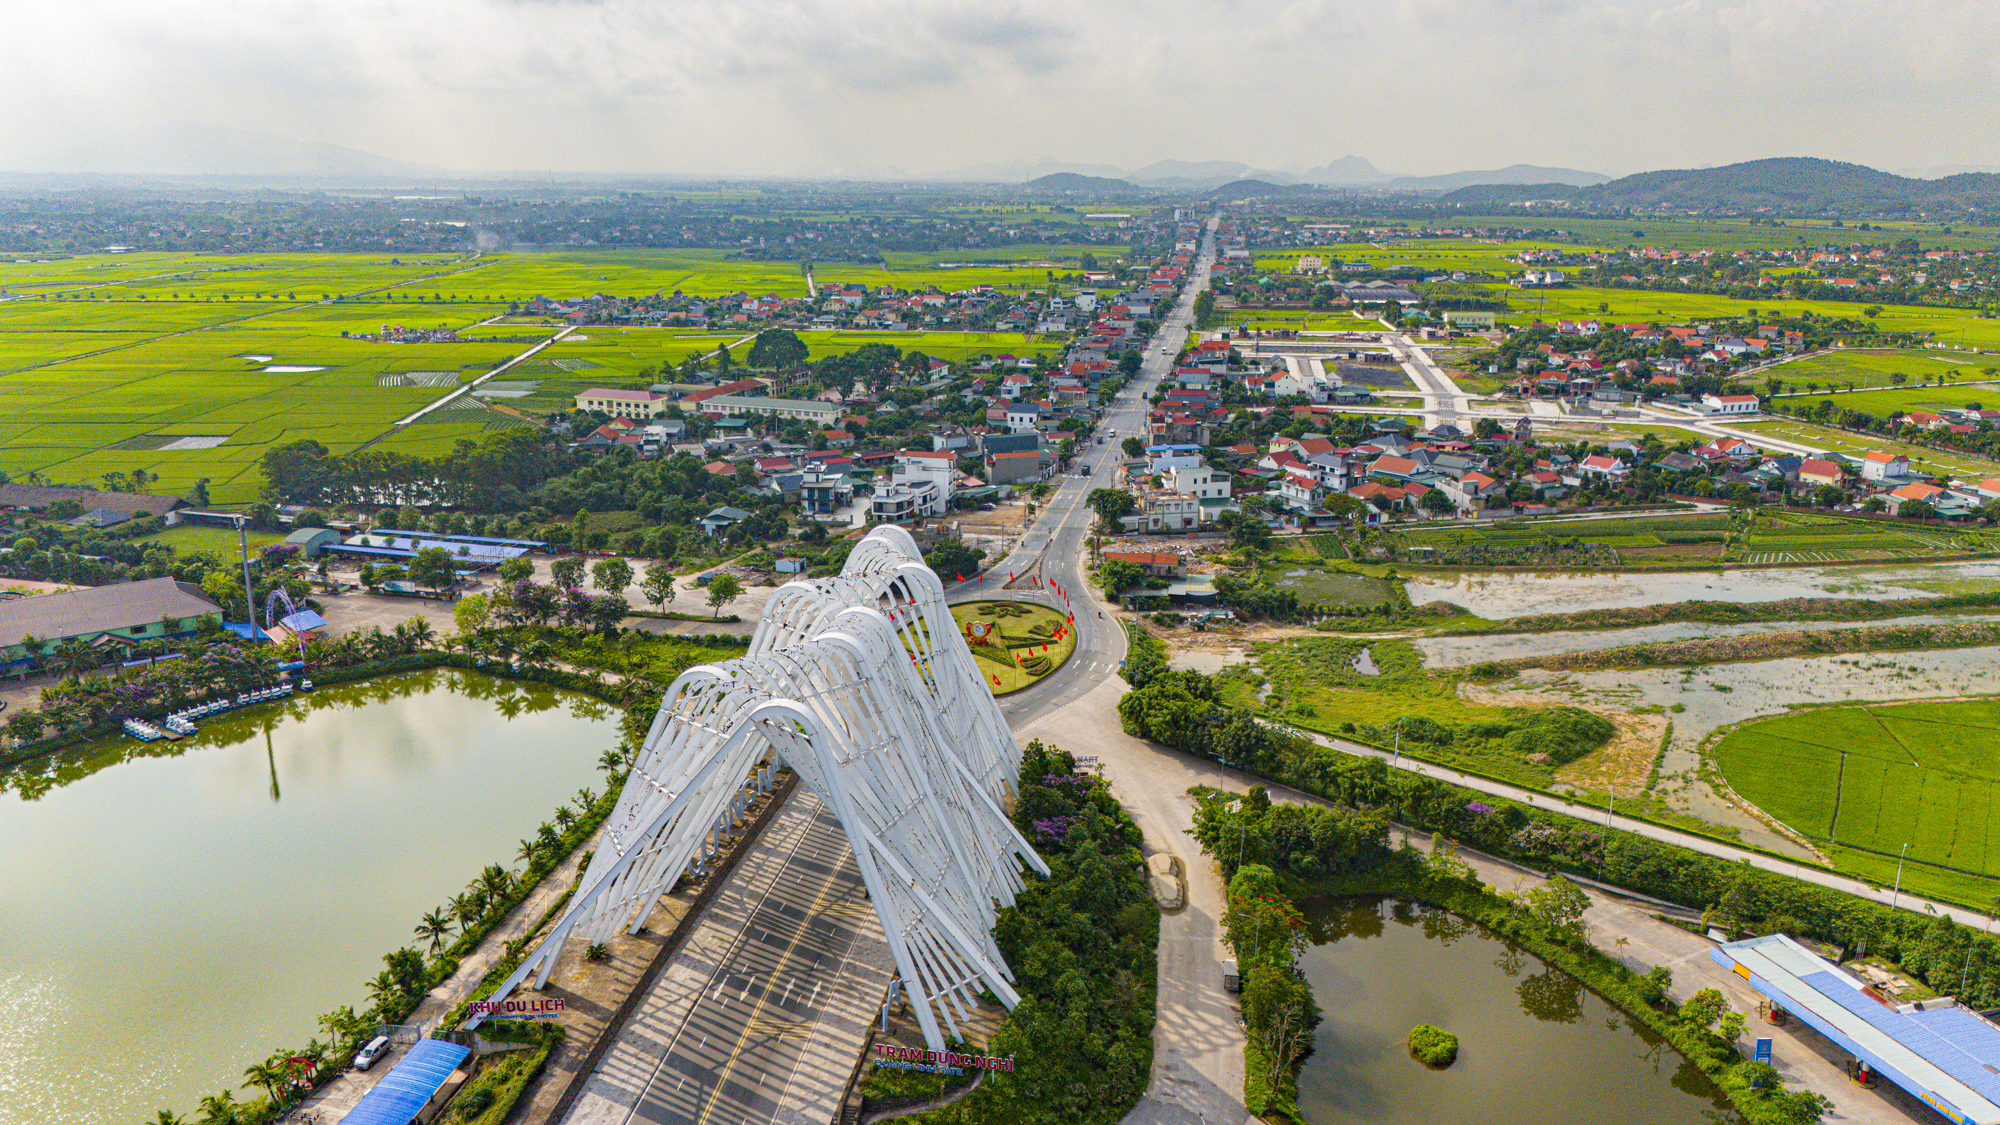 Diện mạo thị xã nằm ở giao điểm tam giác kinh tế Hà Nội - Hải Phòng - Quảng Ninh, có thể đưa tỉnh giáp biên giới trở thành tỉnh có nhiều thành phố nhất- Ảnh 1.